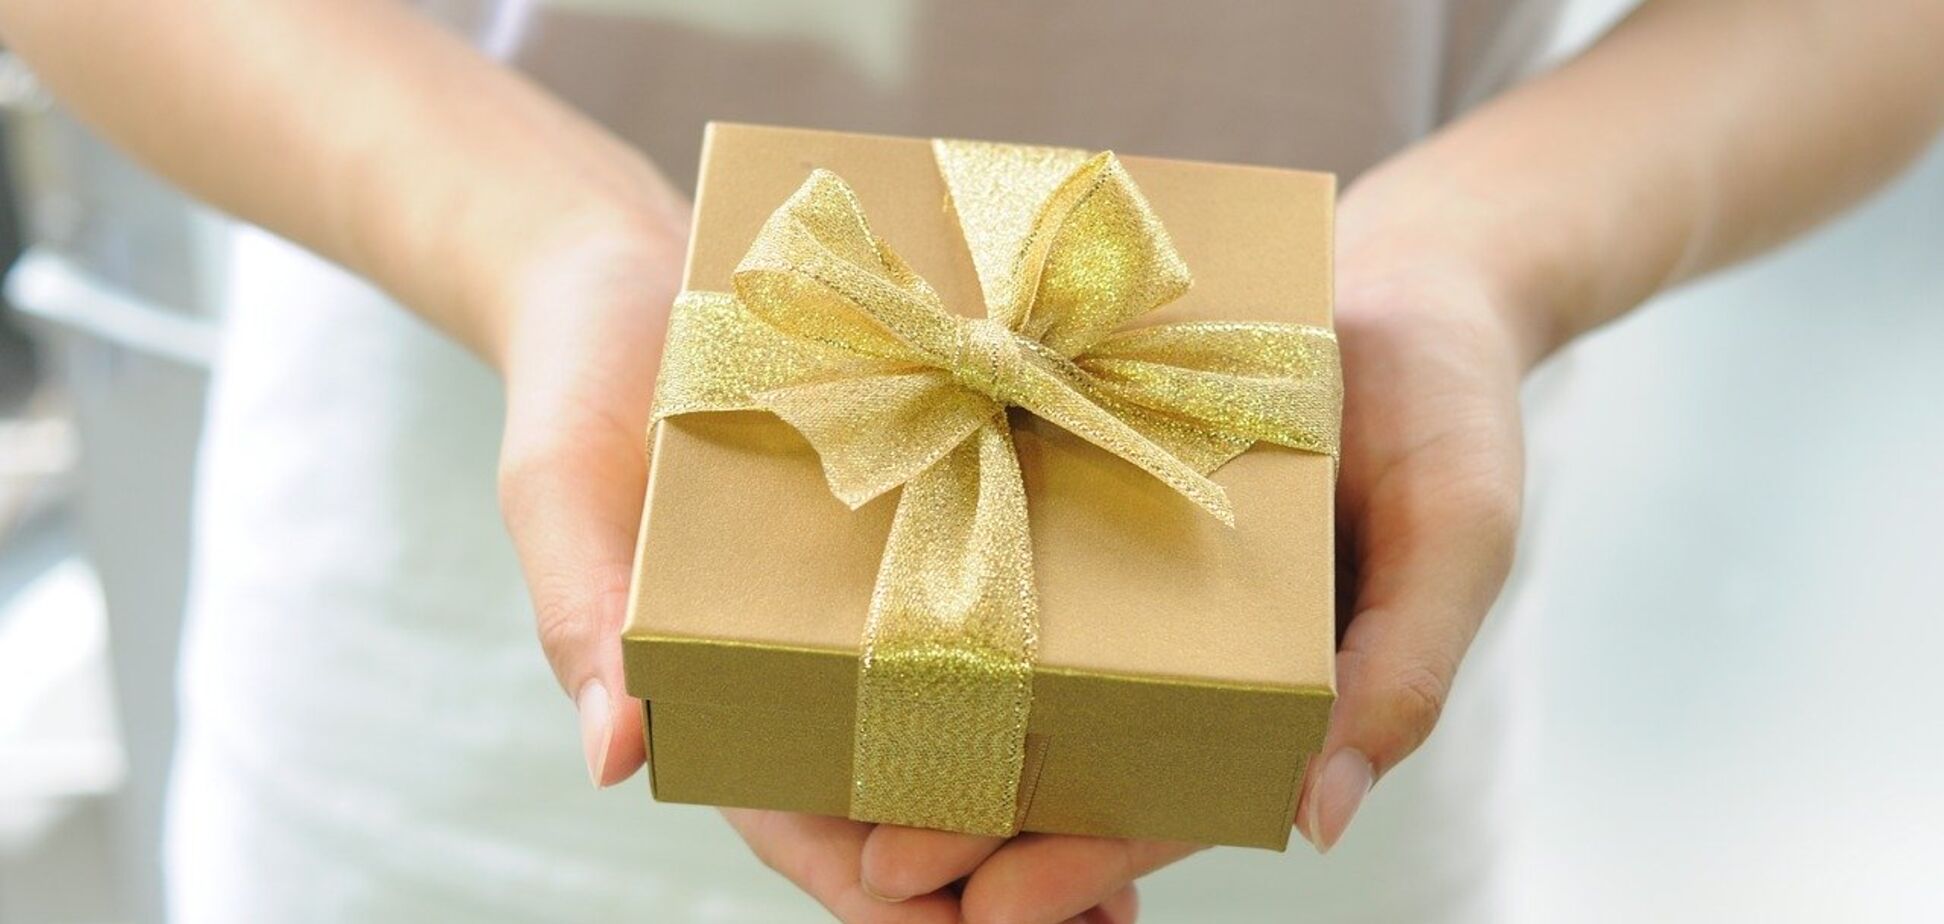 Самые необычные подарки на день рождения, которые поднимут настроение: 10 идей